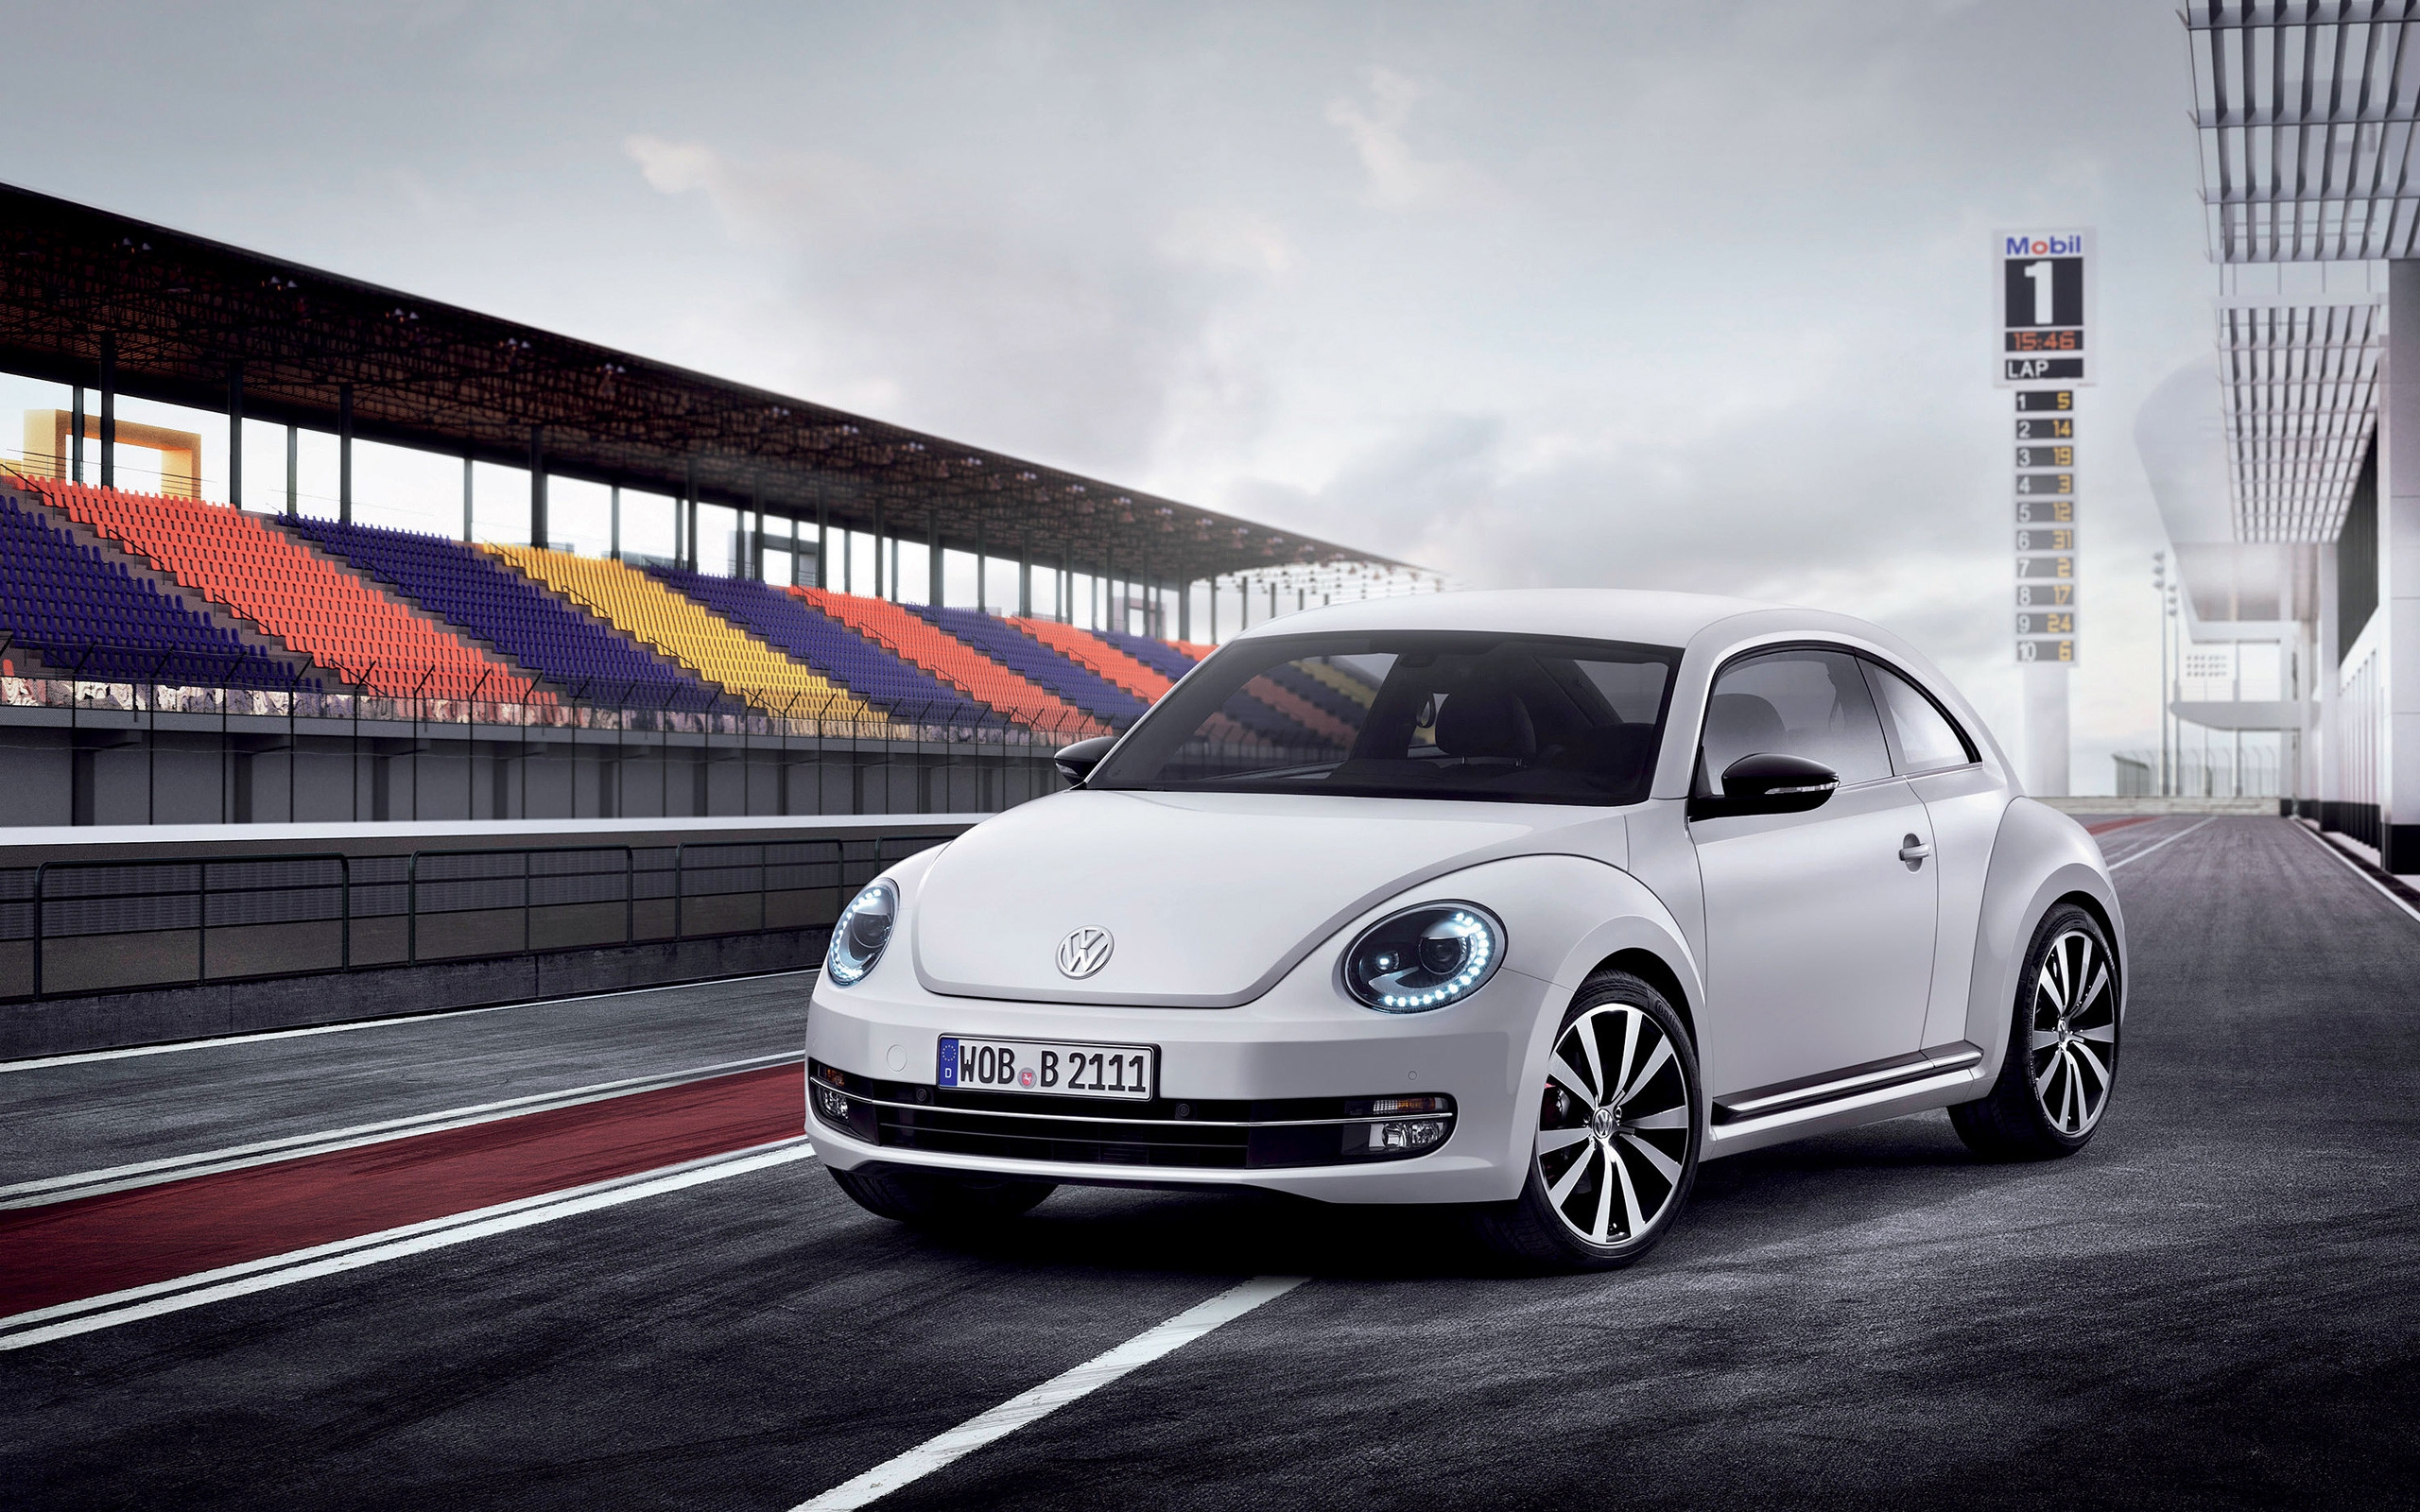 Volkswagen Beetle 2012 for 2560 x 1600 widescreen resolution